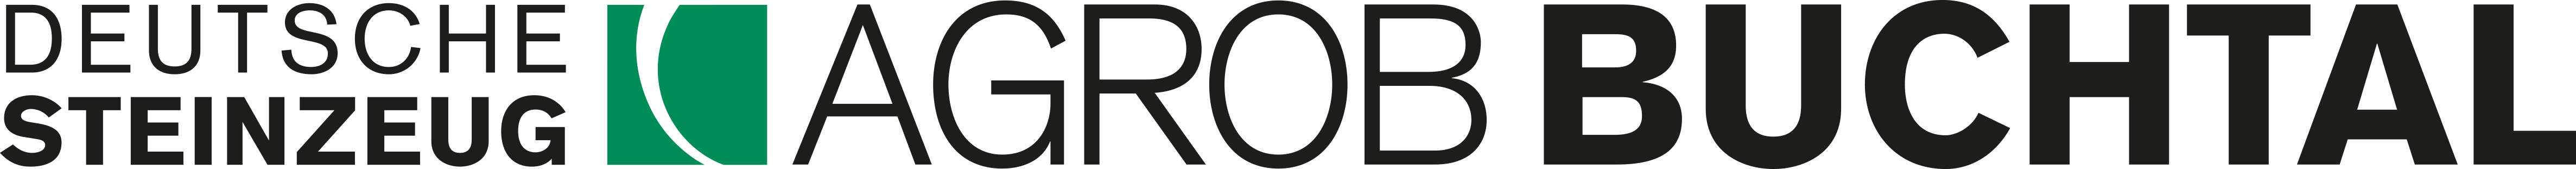 Agrob Buchtal Logo